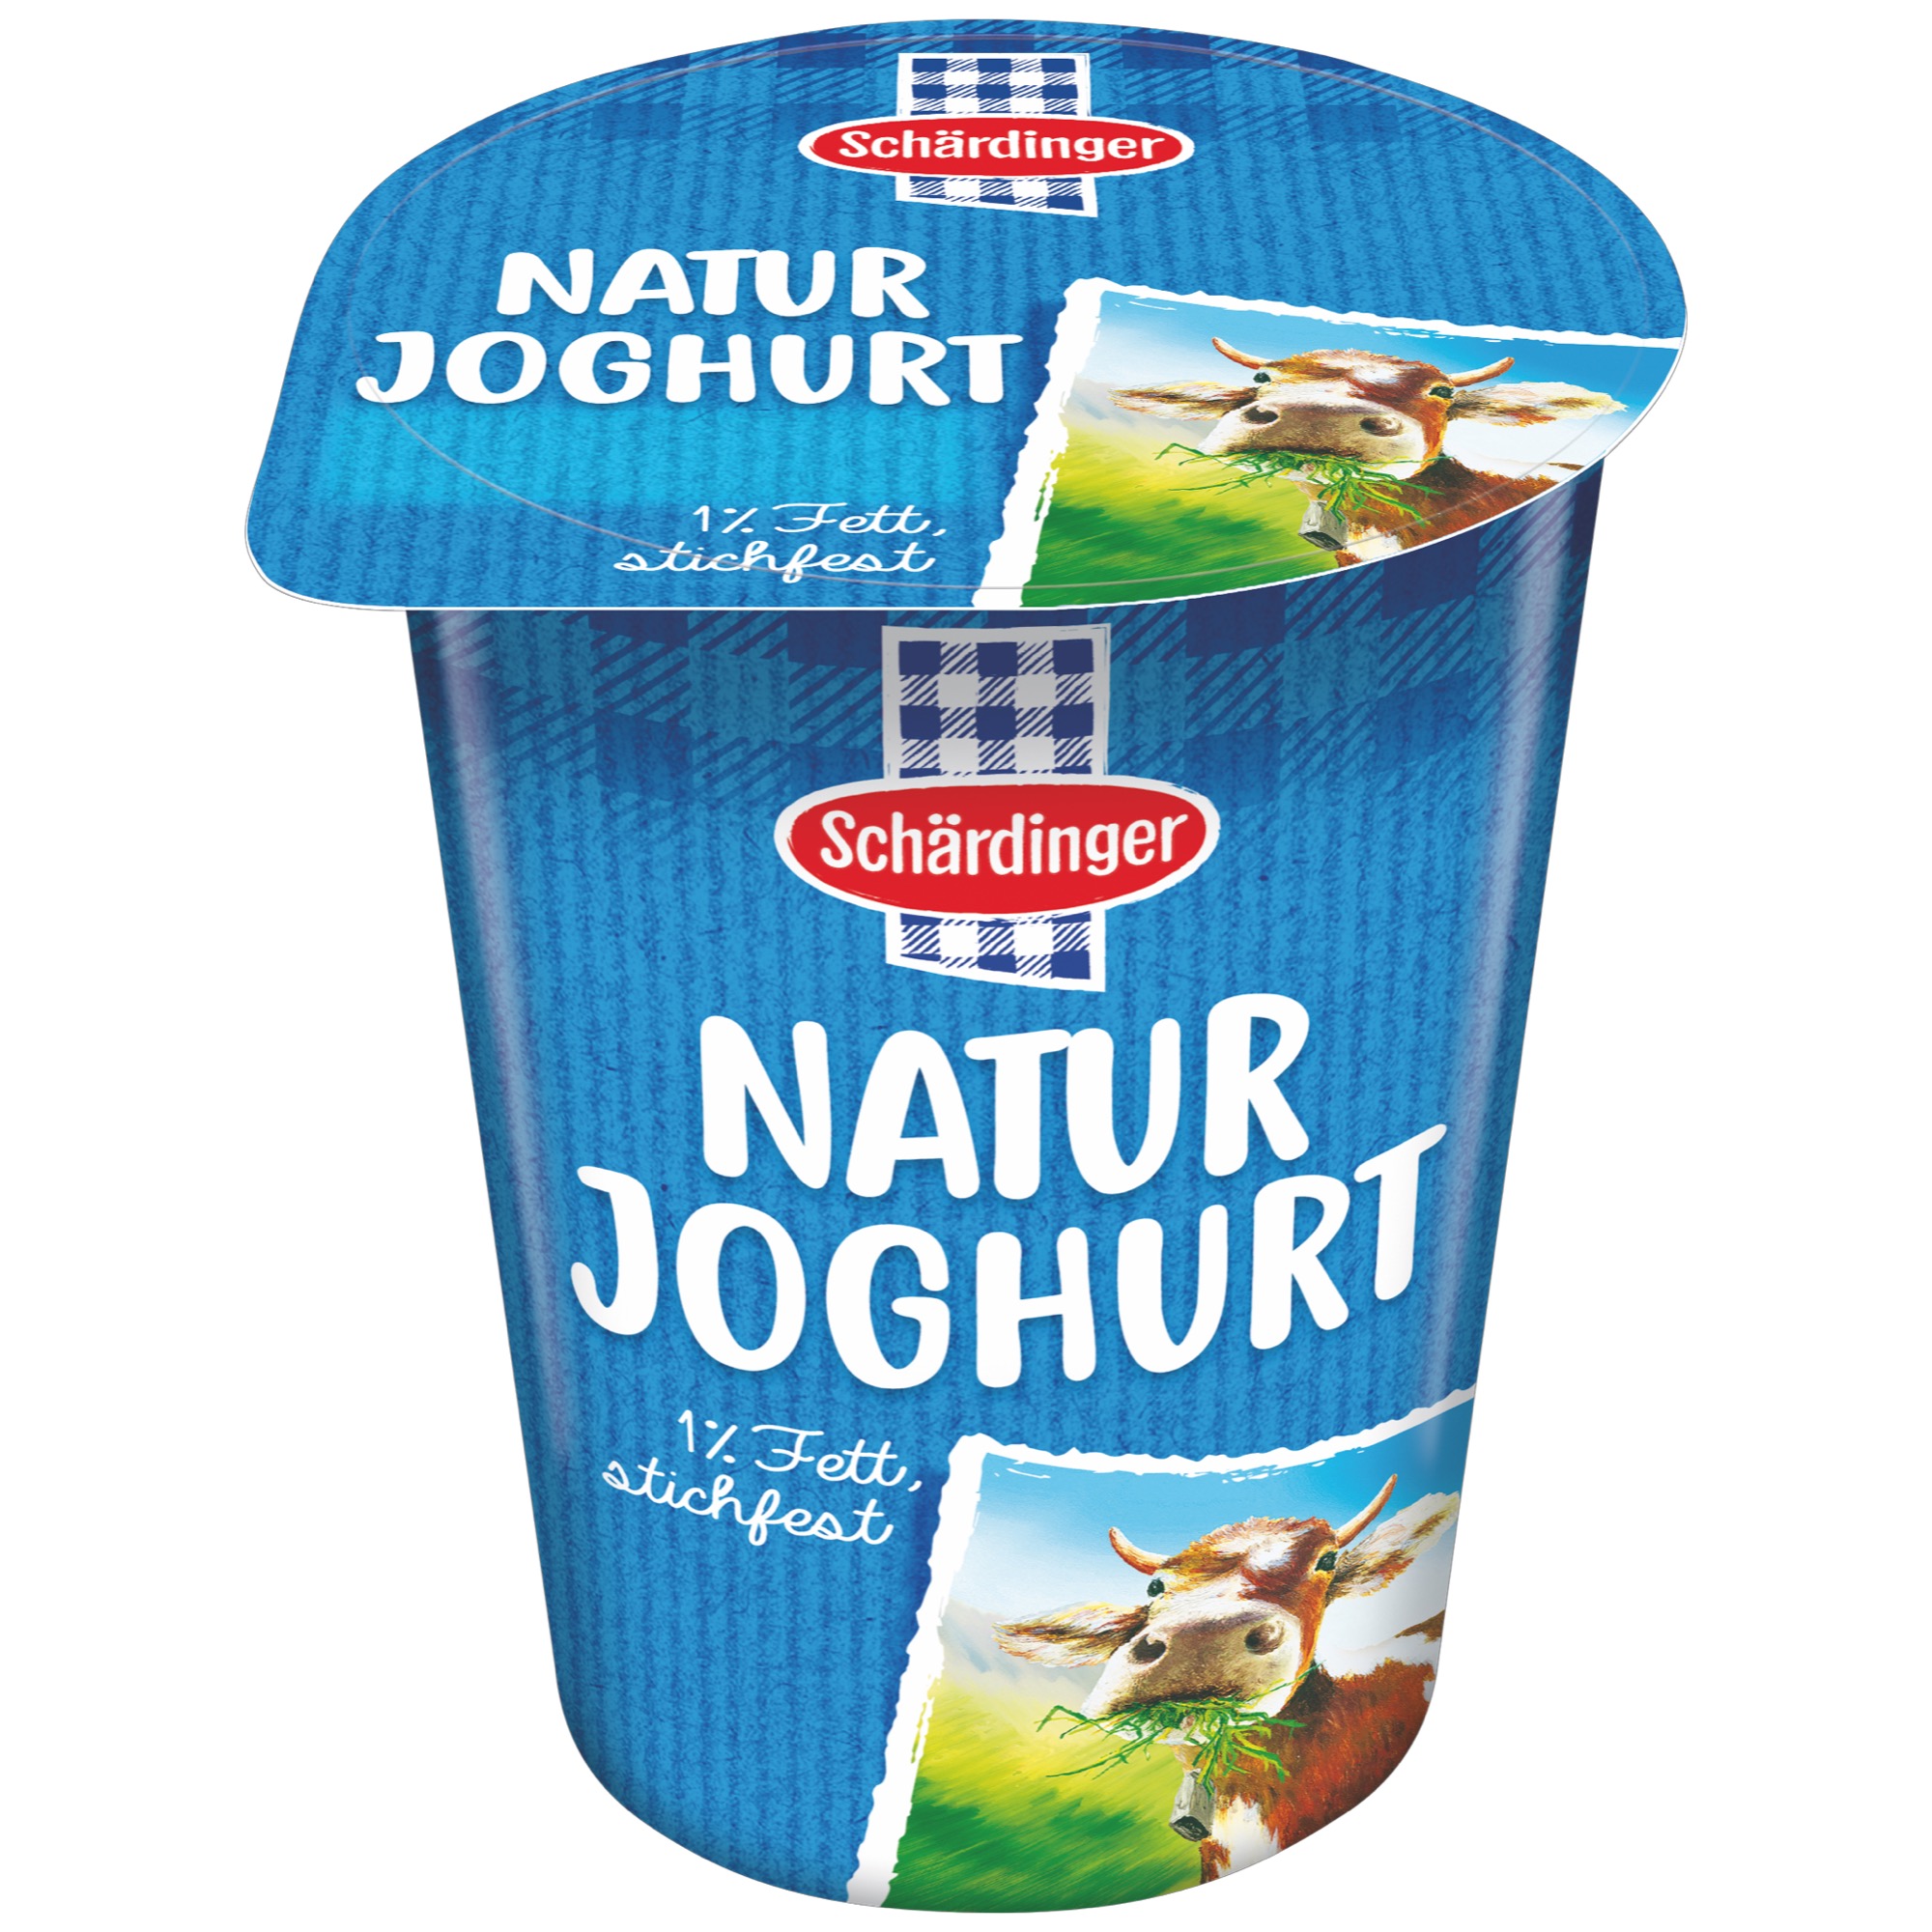 Schärdinger jogurt prír. 1% 250g